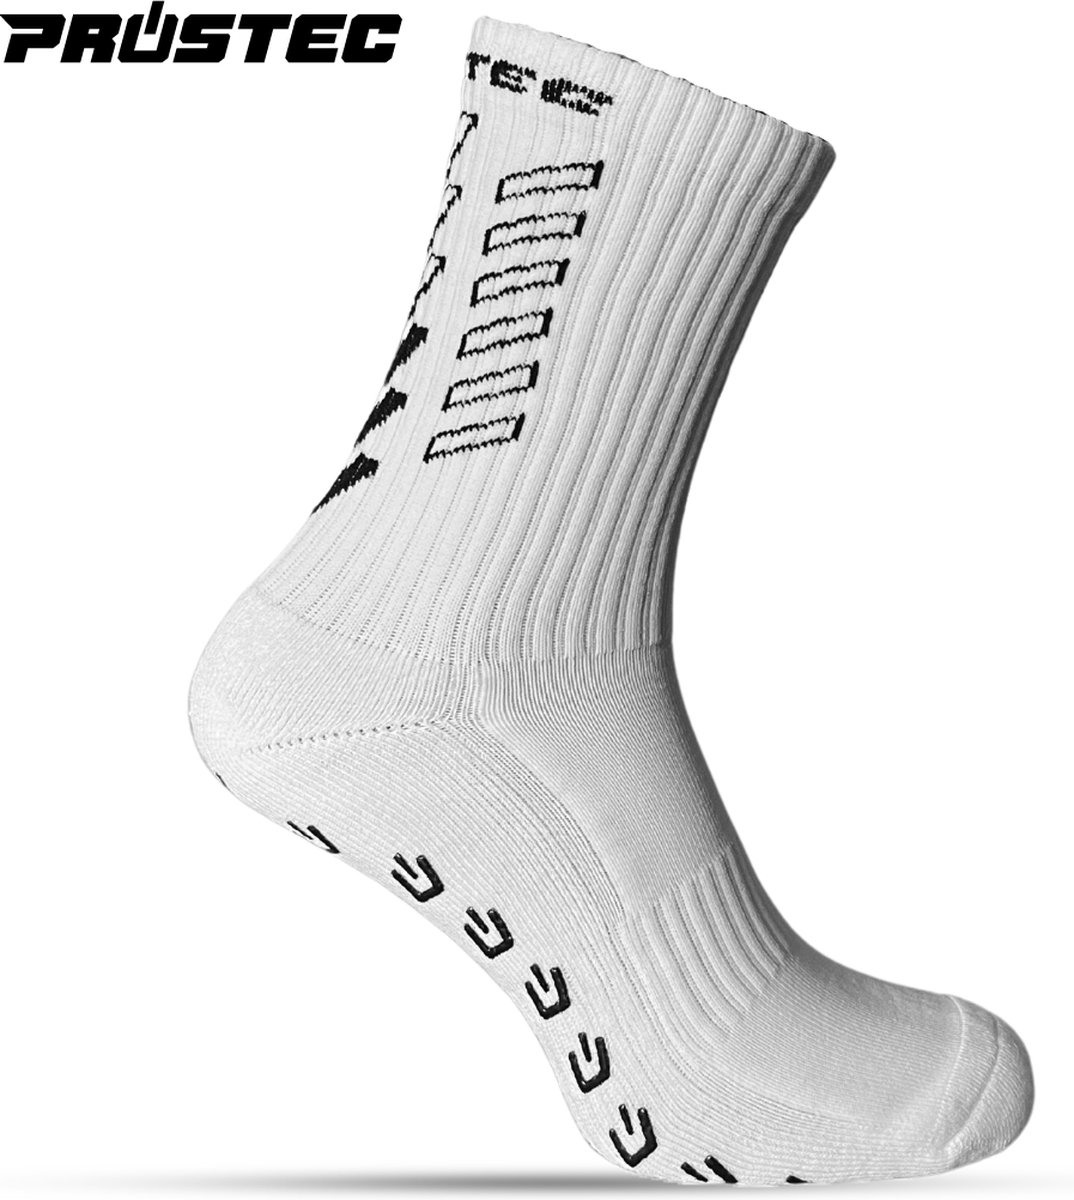 Prostec® Gripsokken - Gripsokken Voetbal - Grip Socks - One Size - Anti Slip - Gripsokken Wit